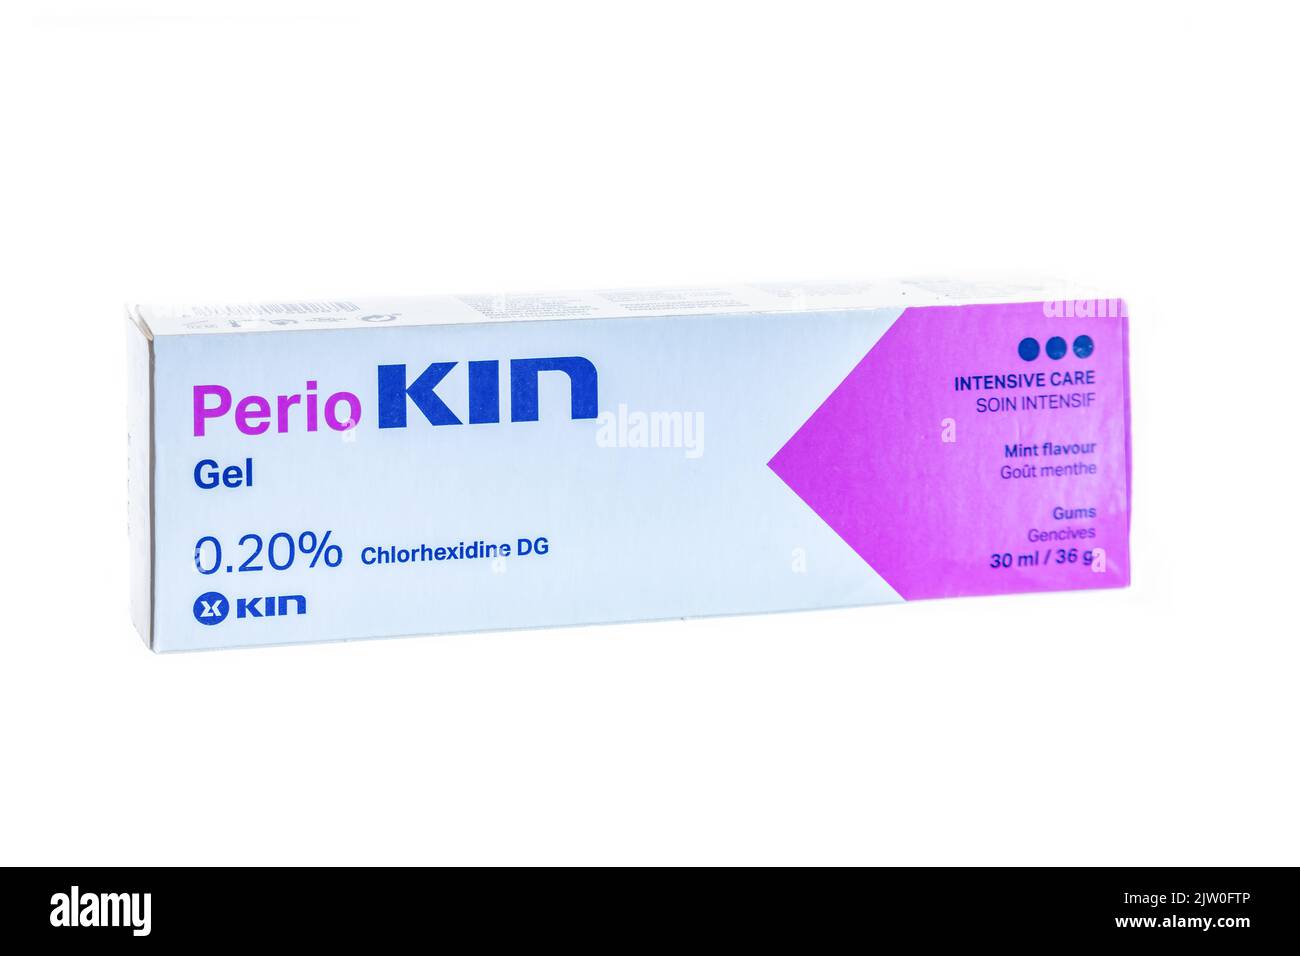 Huelva, España - 2 de septiembre de 2022: Gel de clorhexidina Perio Kin al 0,20% para tratamiento periodontal y periimplante. Es bioadhesivo para aplicaciones tópicas Foto de stock